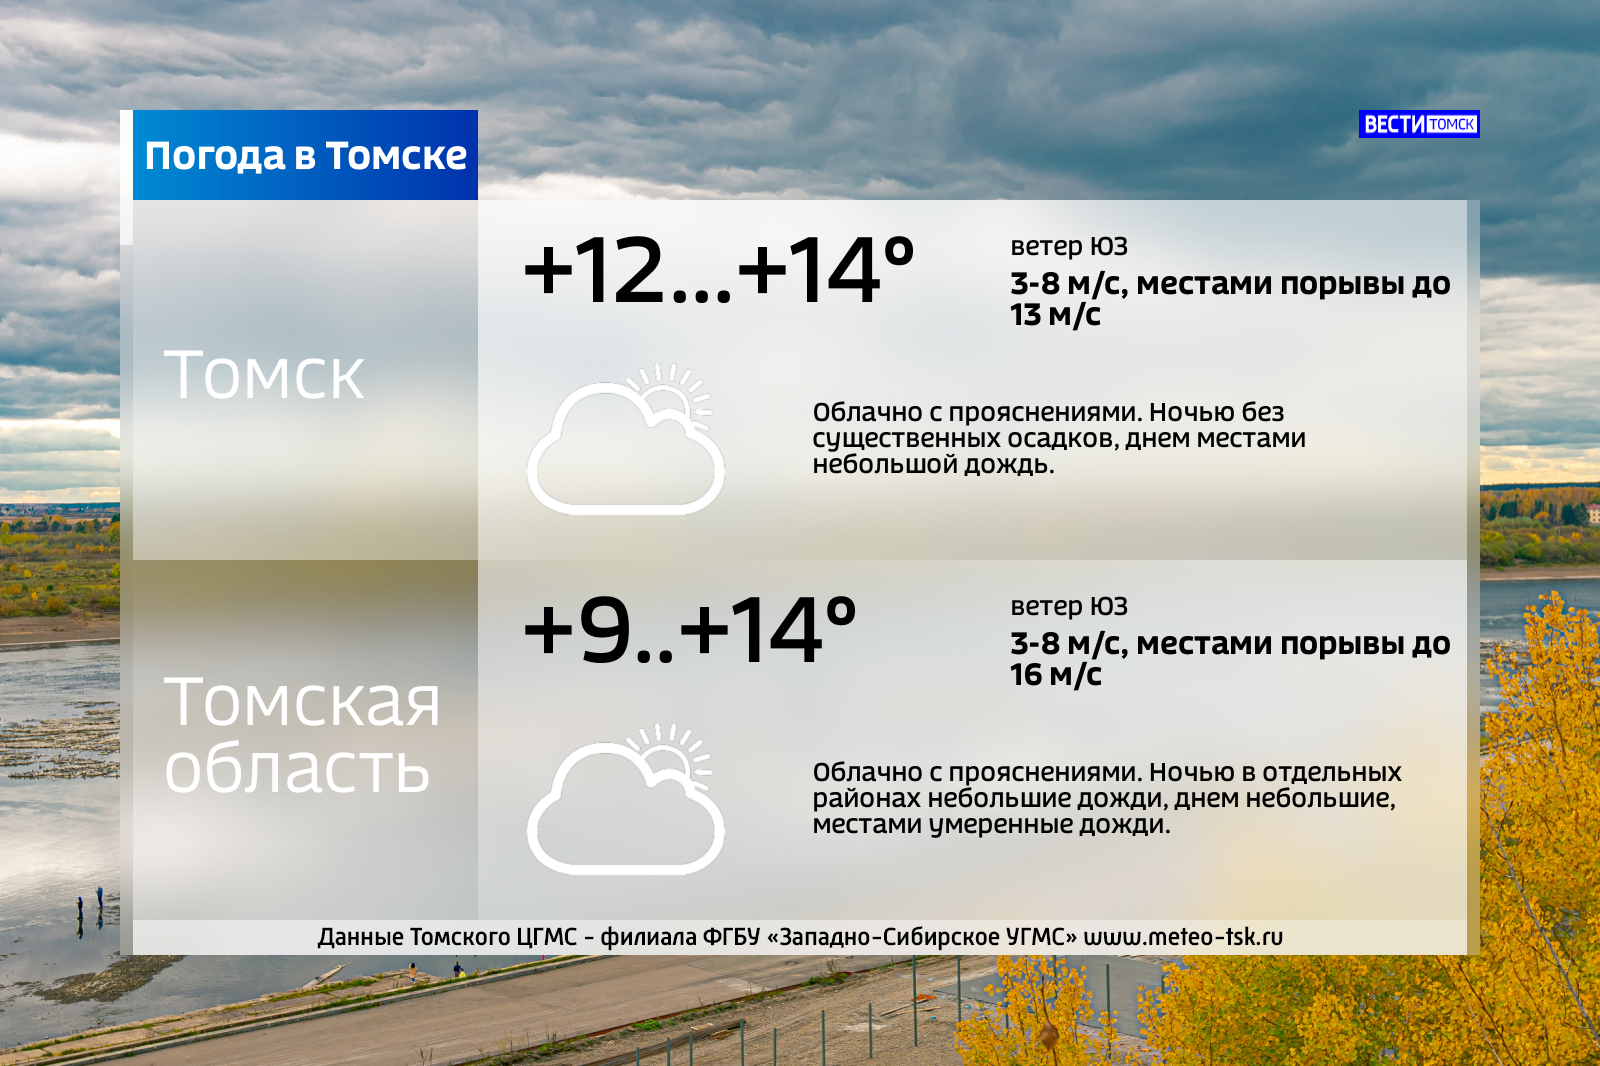 Погода в томском. Погода в Томске. Погода в Томске сегодня. Погода в Томске сейчас. Погода в Томске на завтра.